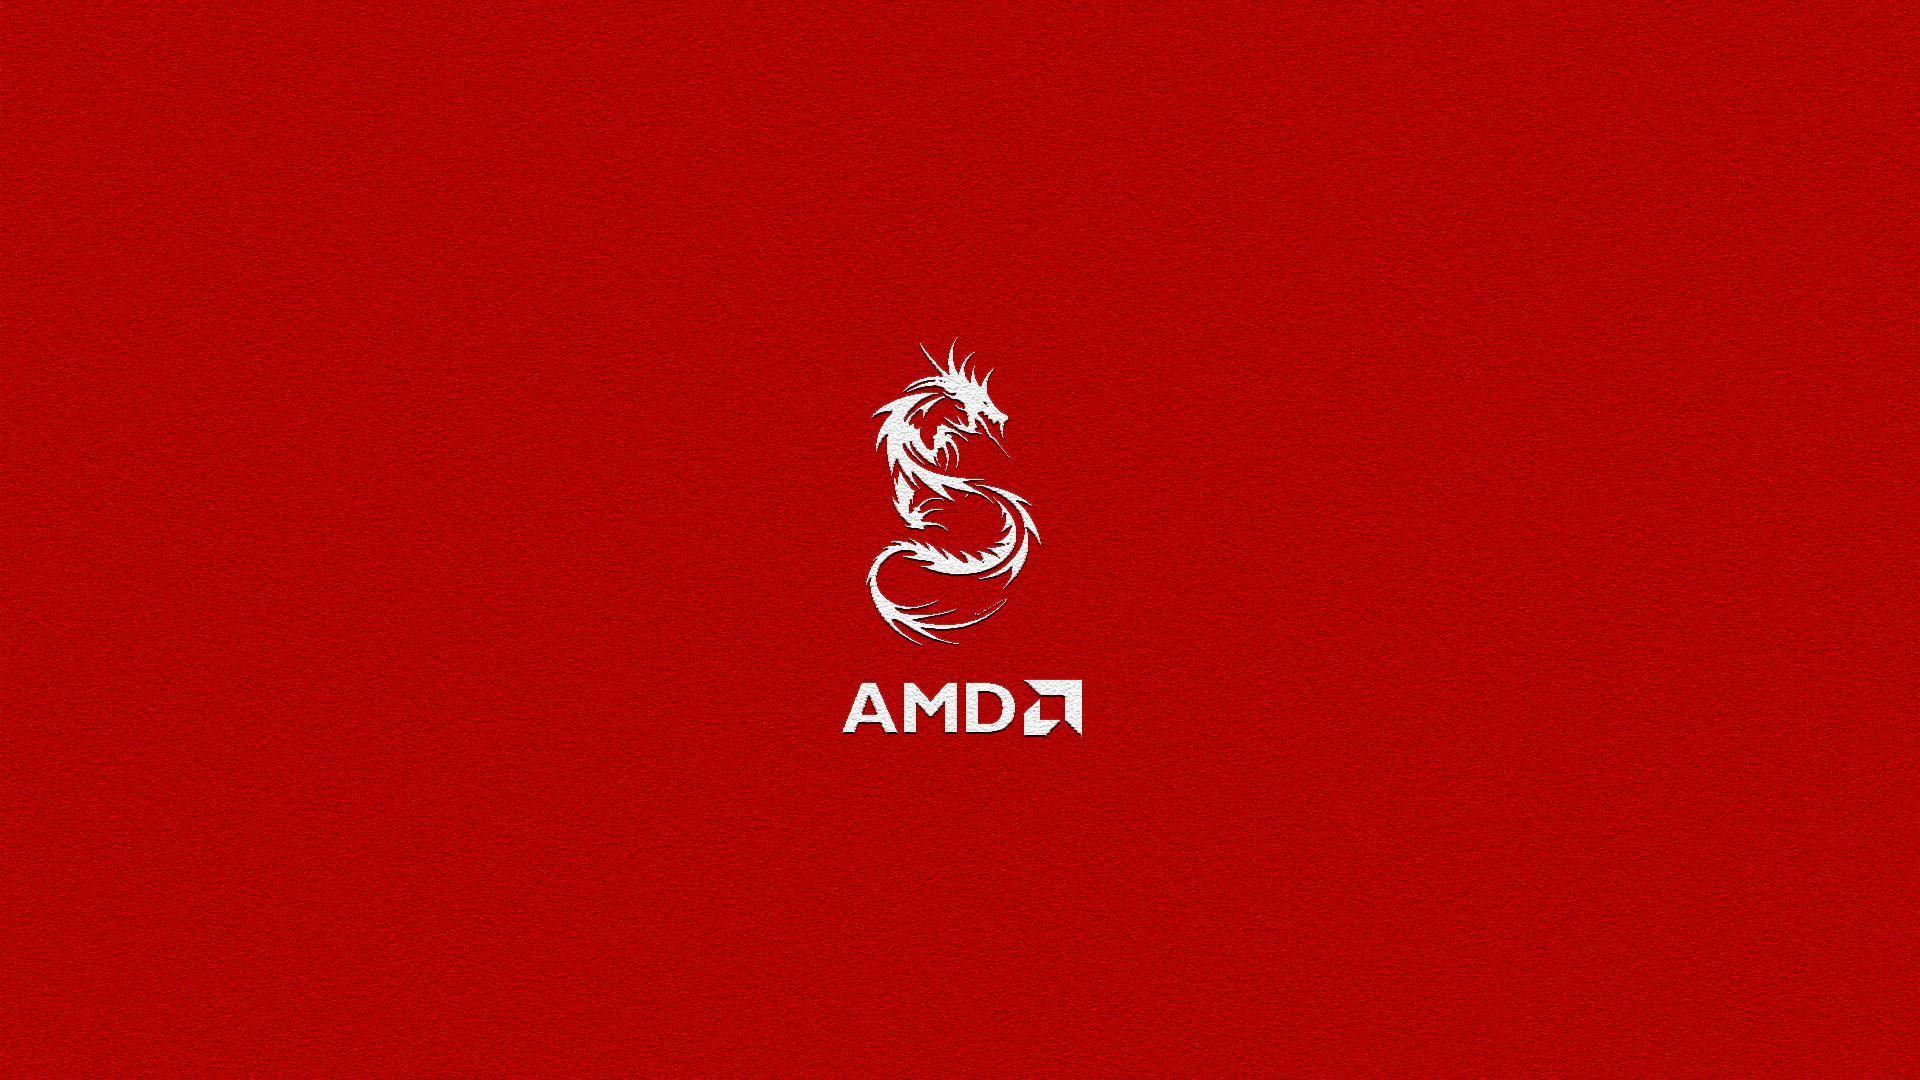 AmazingPict.com. AMD Red Wallpaper Desktop